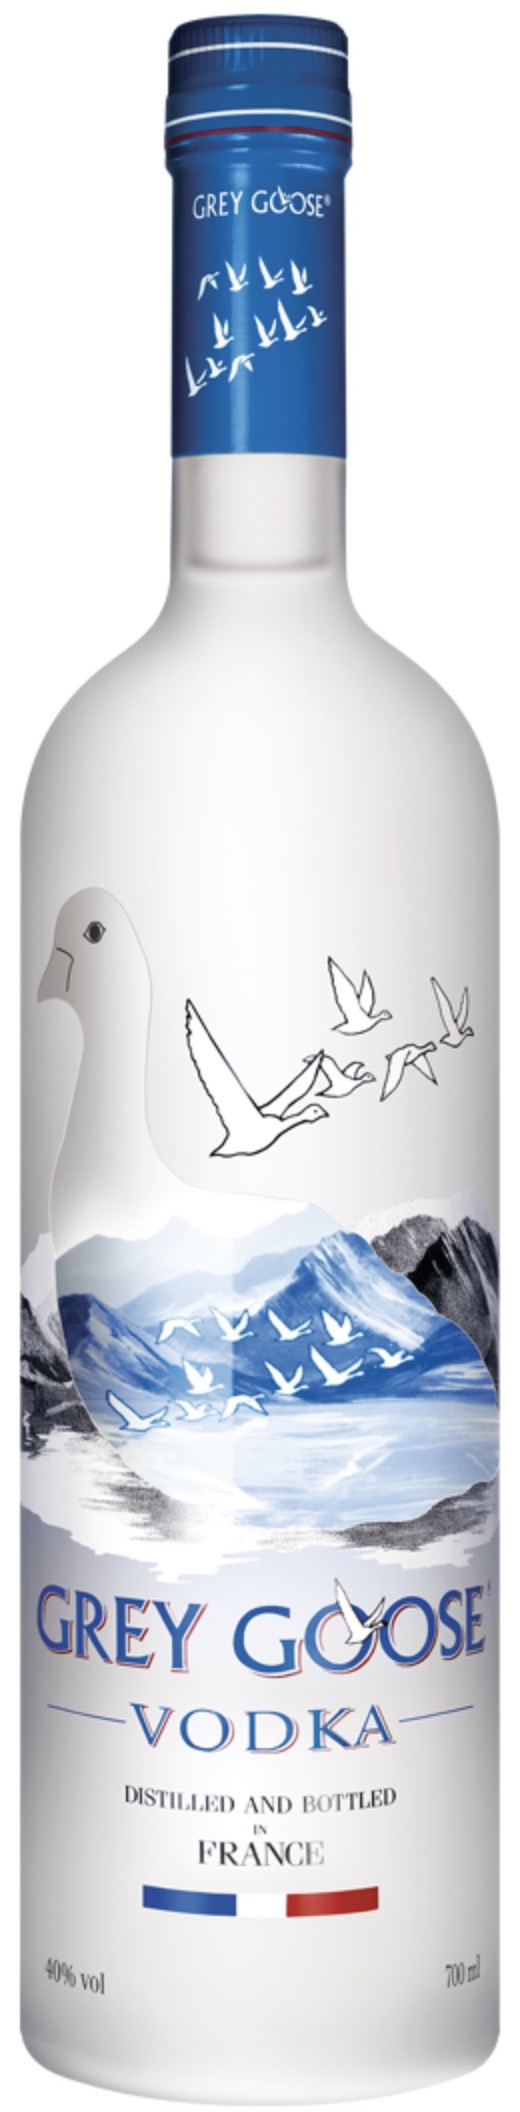 Grey Goose Vodka Distilled and Bottled in France 40 % vol. 0,7L